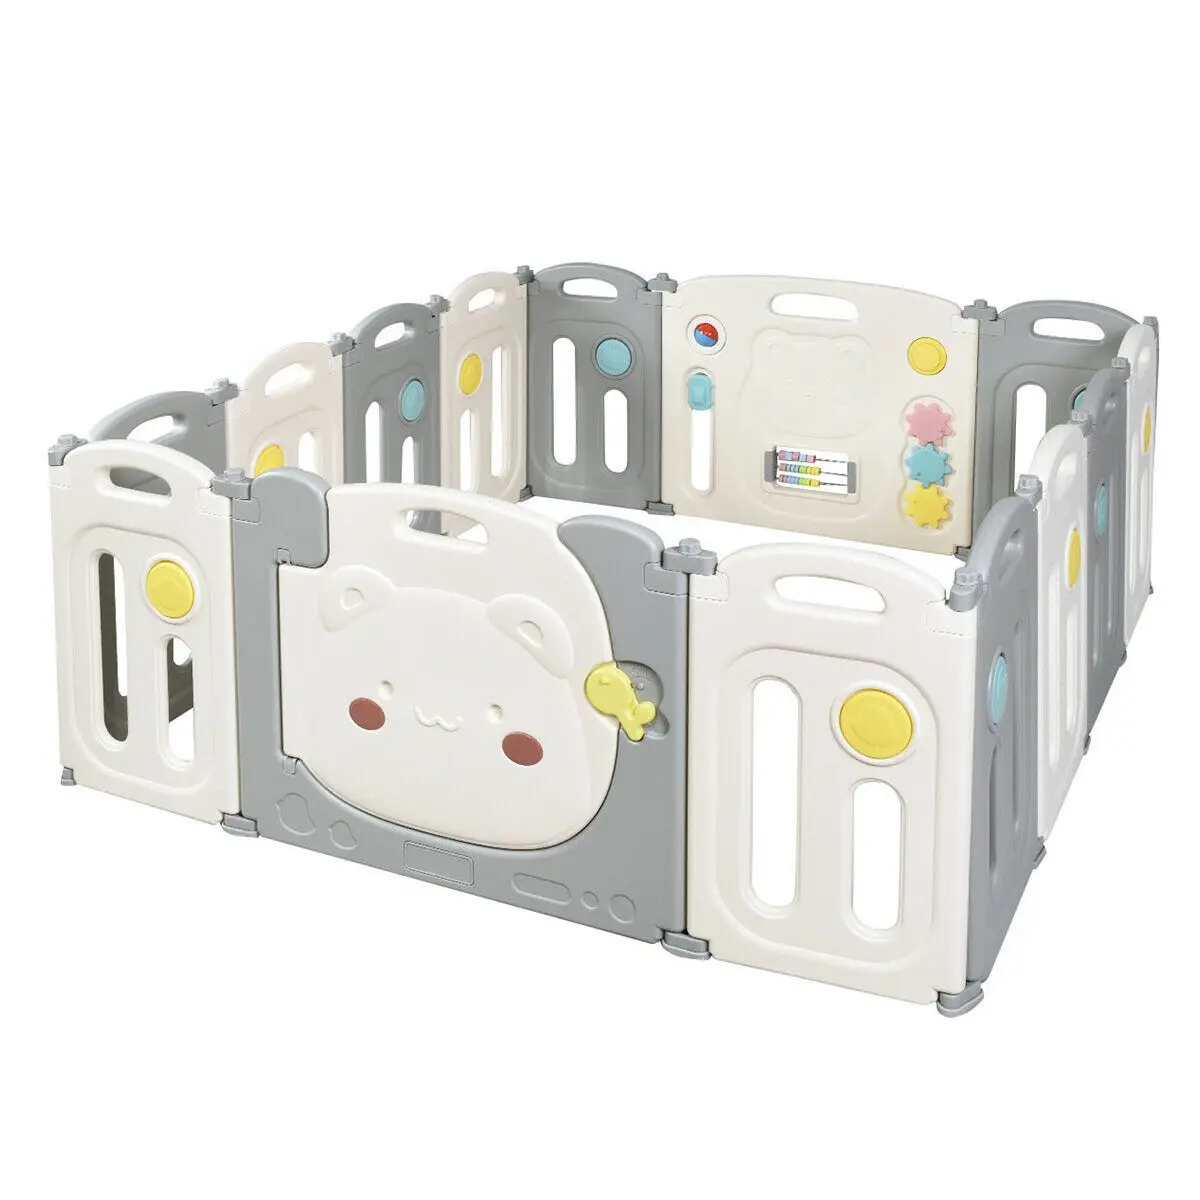 Corralito moderno para bebé, valla de juego de alta calidad, cerca plegable de plástico, color gris y blanco